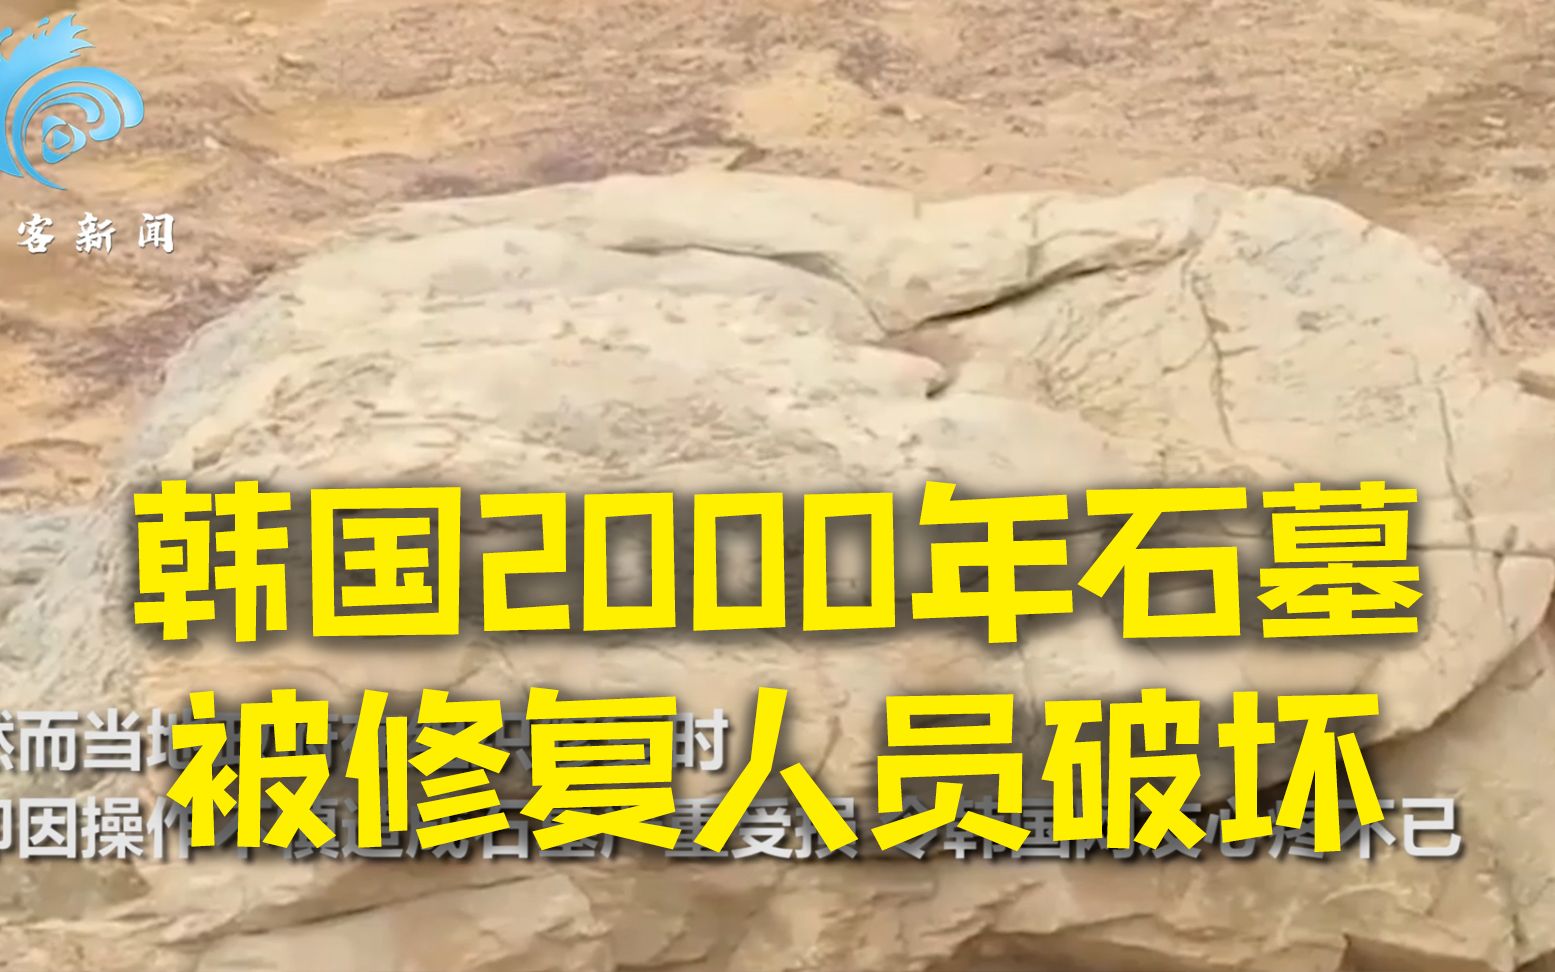 韩国2000年石墓被修复人员破坏 韩国网友气哭：这可是世界第一啊